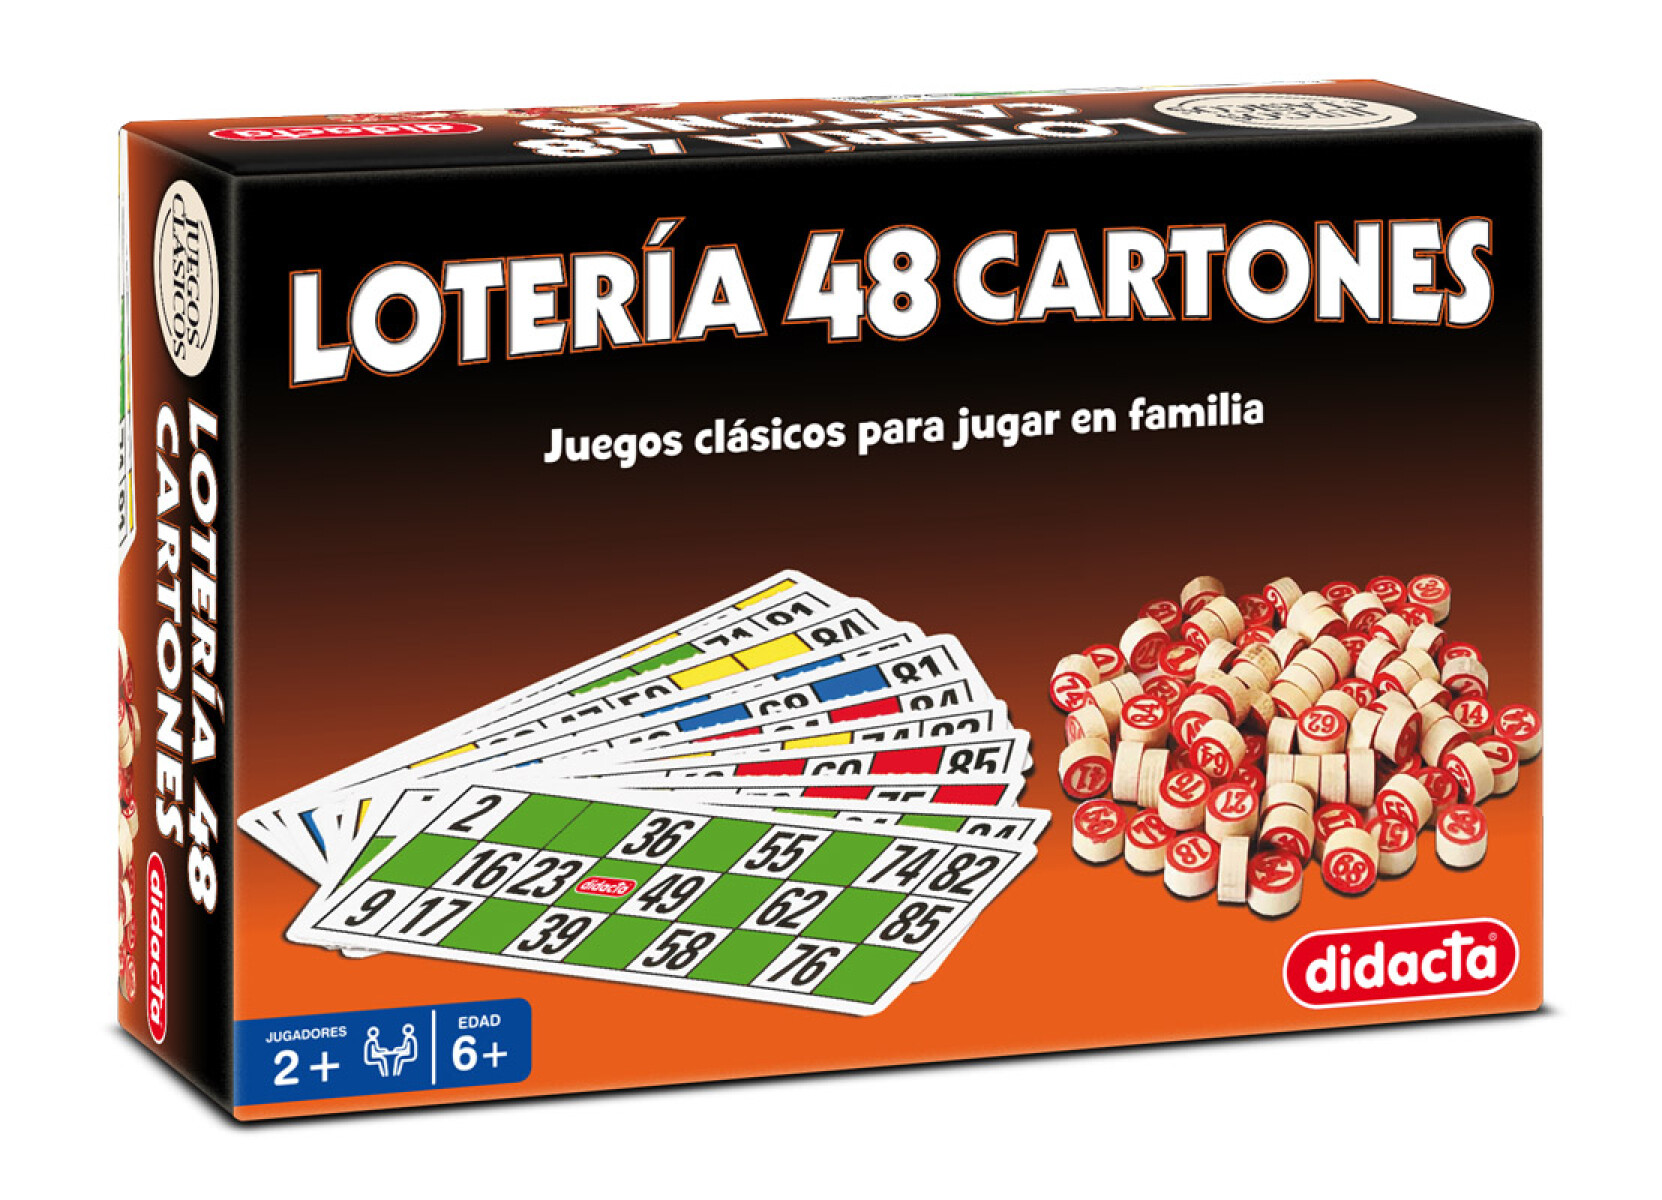 Juego Clásico Lotería 48 Cartones Didacta - 001 